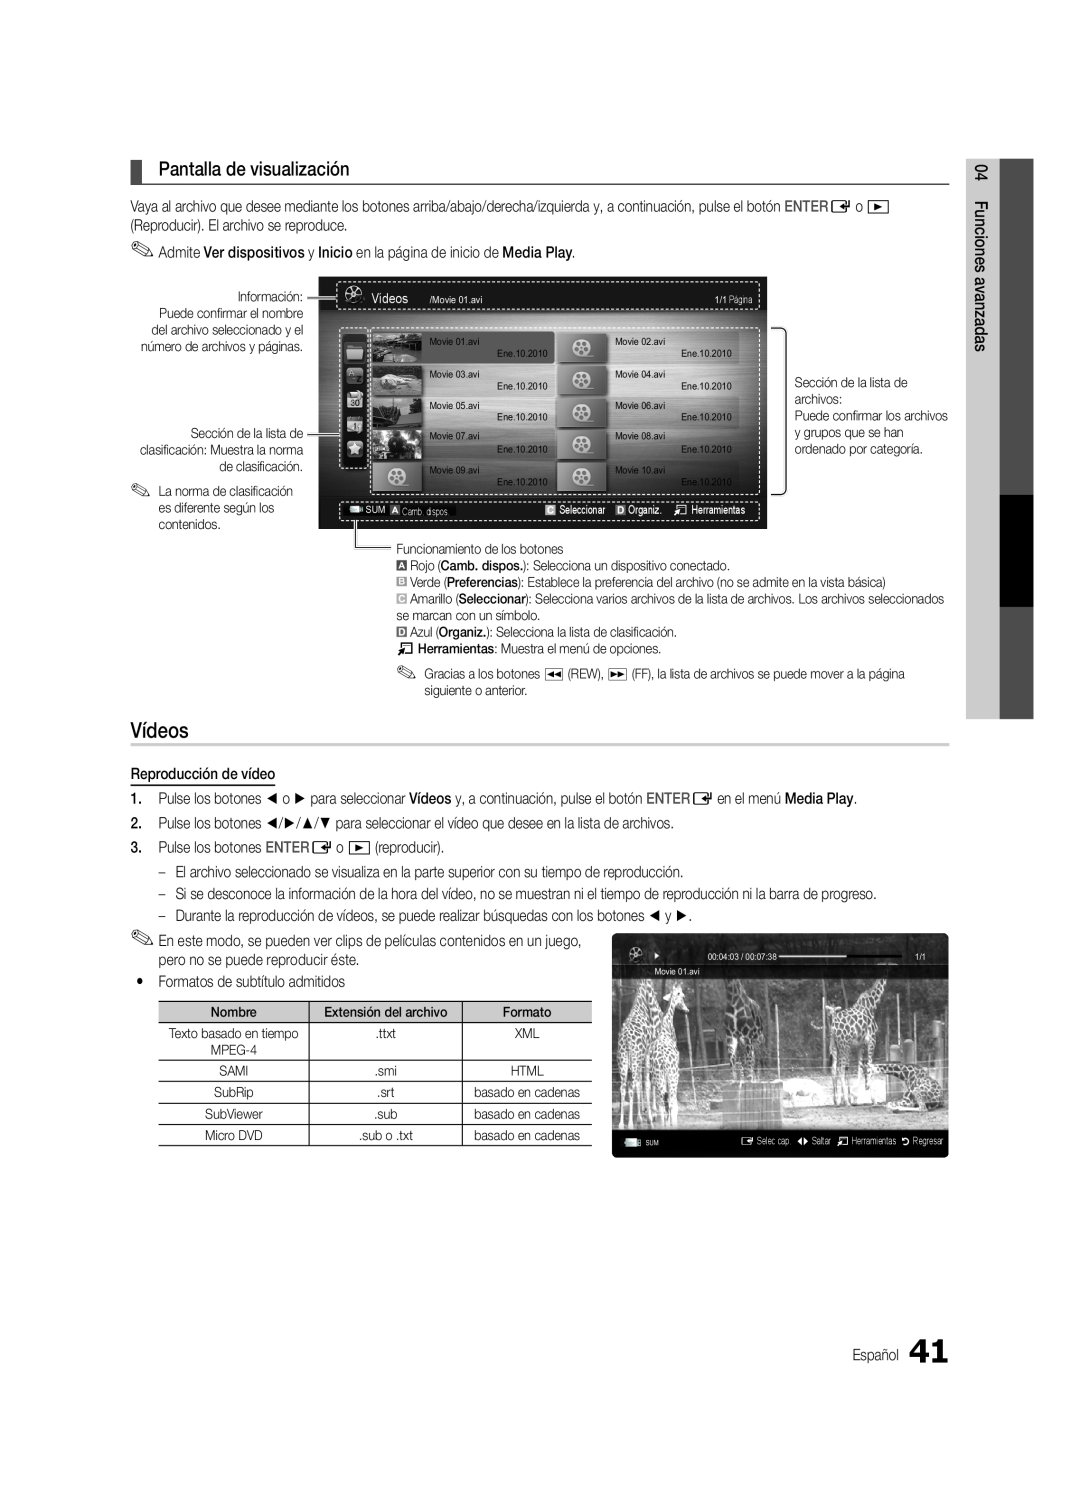 Samsung Series C9, BN68-03088A-01 user manual Vídeos, Pantalla de visualización 